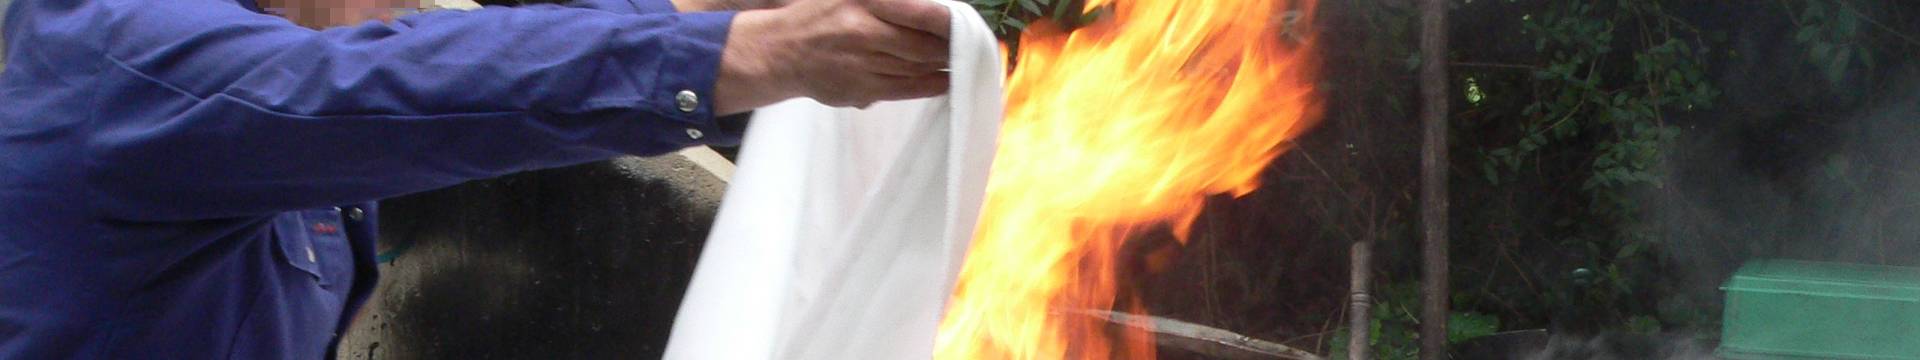 Un hombre está usando una manta de fuego para extinguir el fuego.